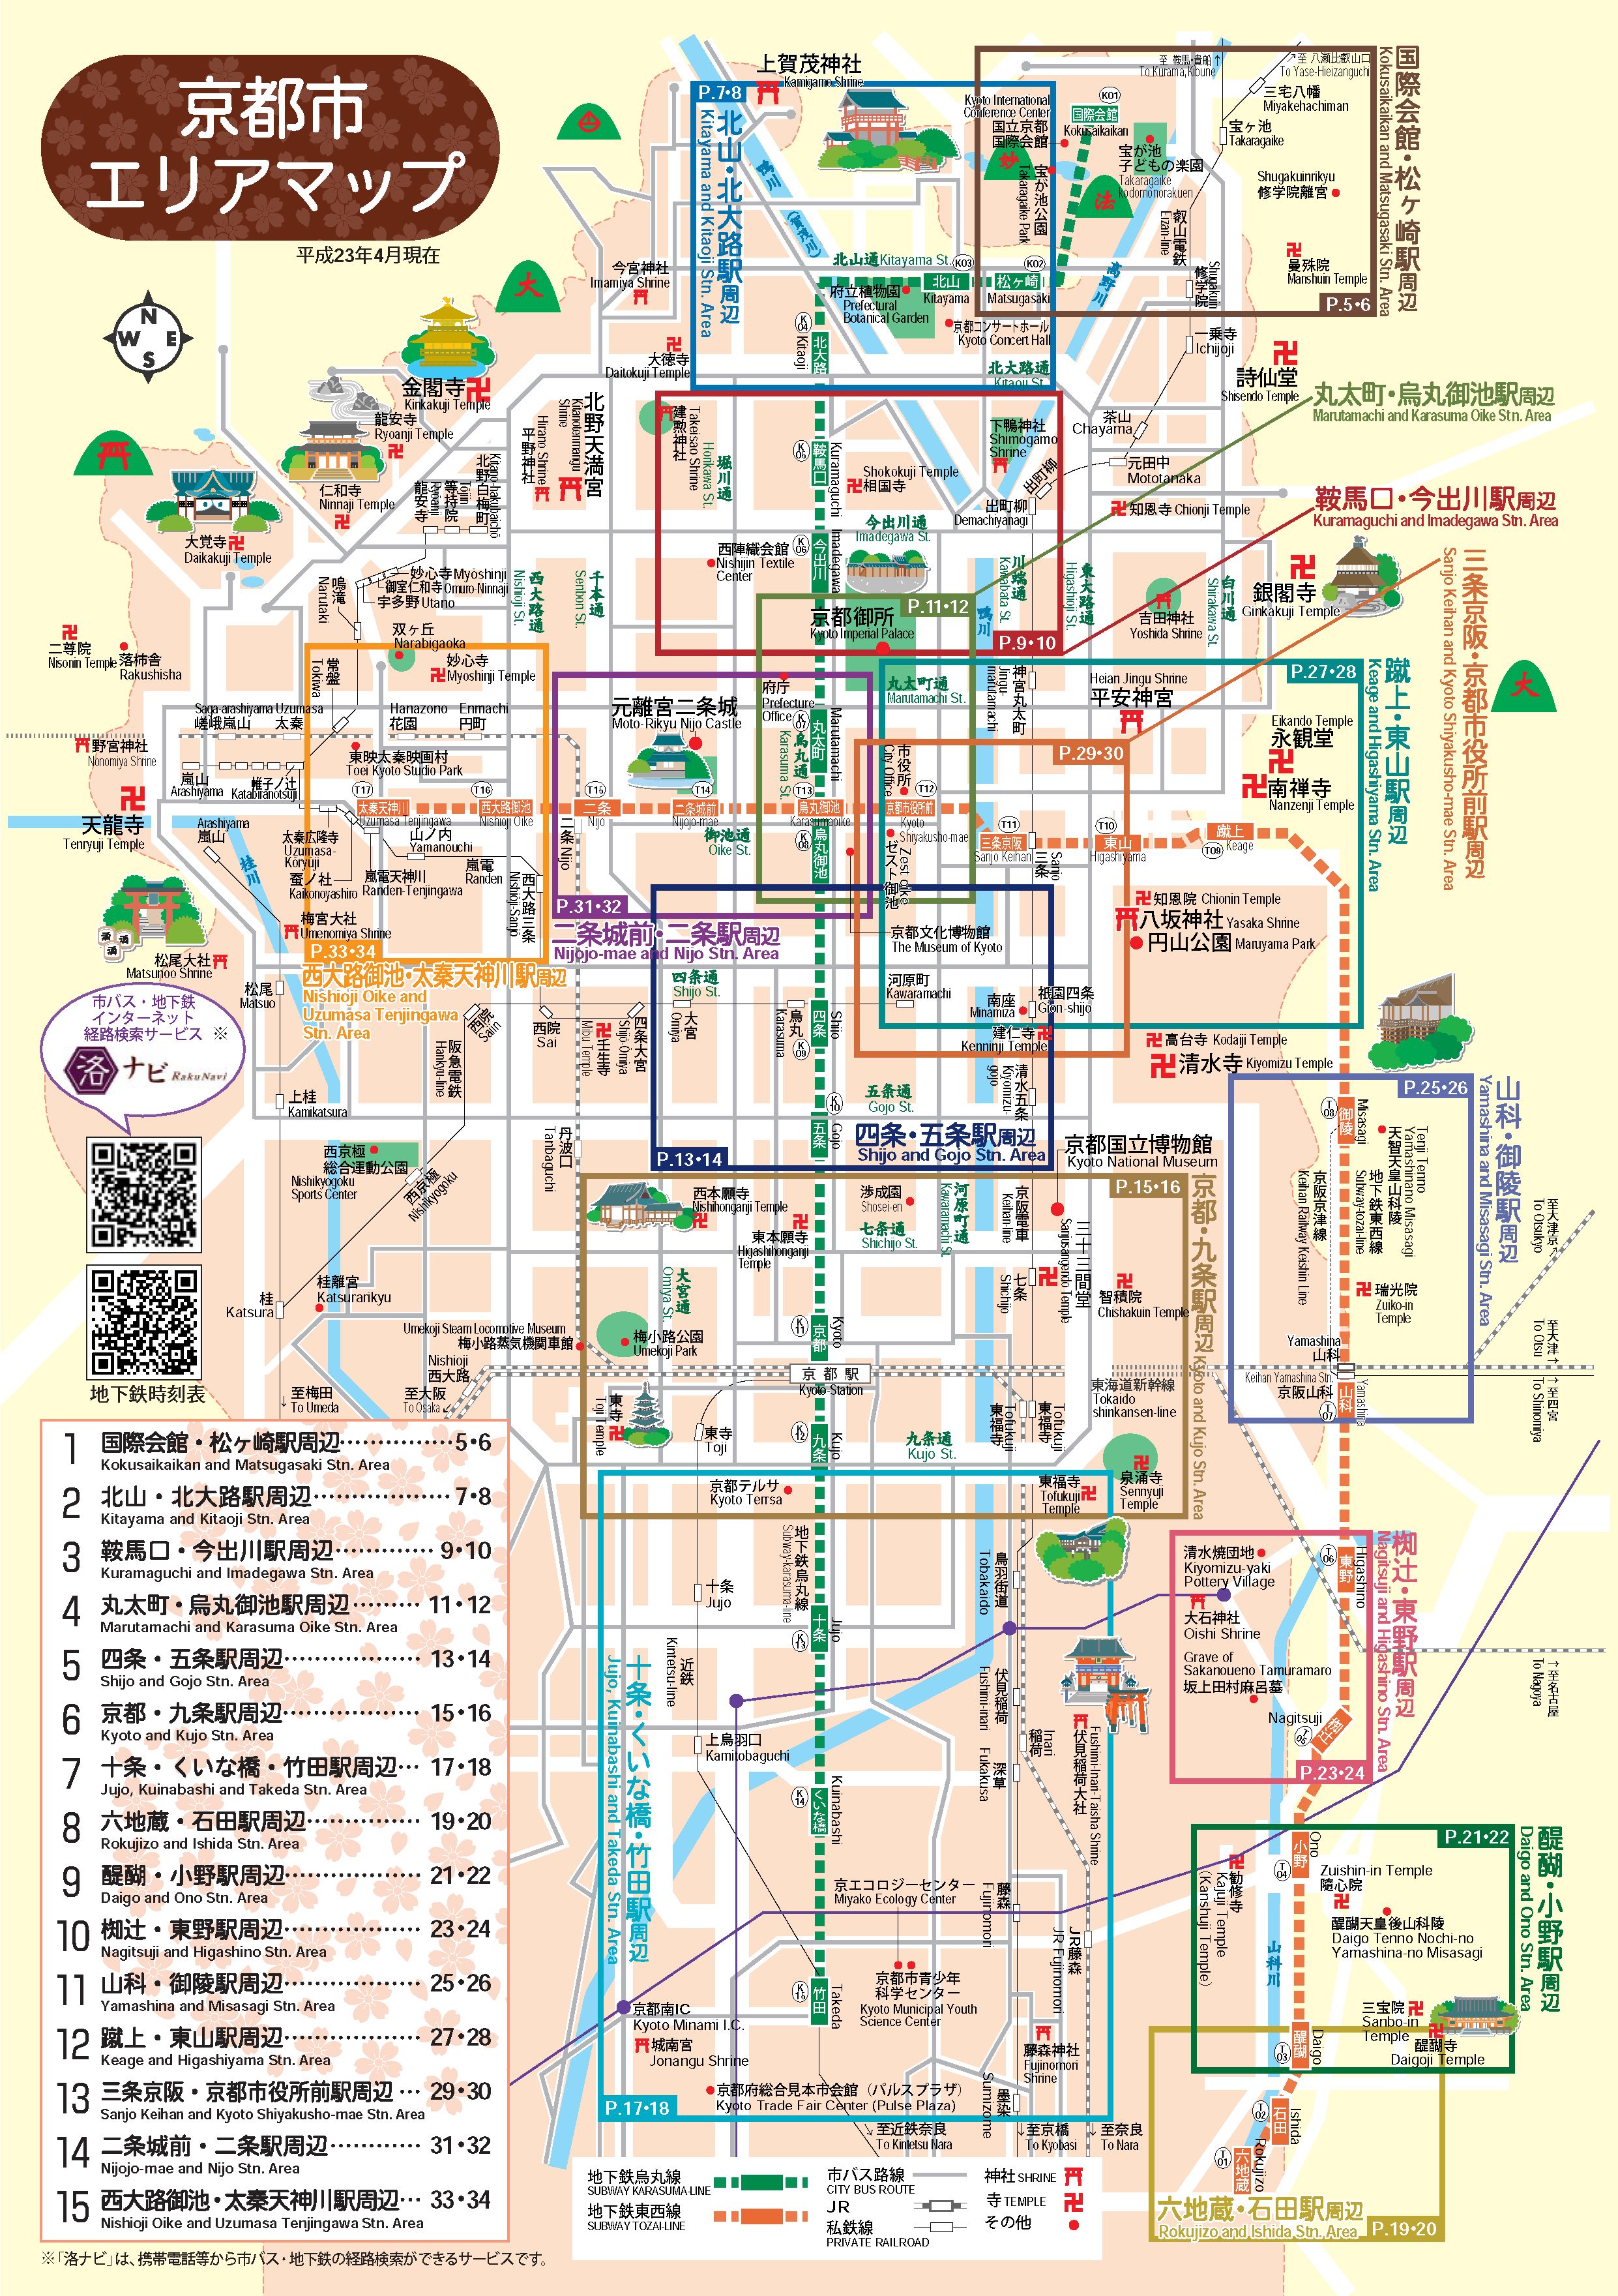 京都地圖點擊可放大